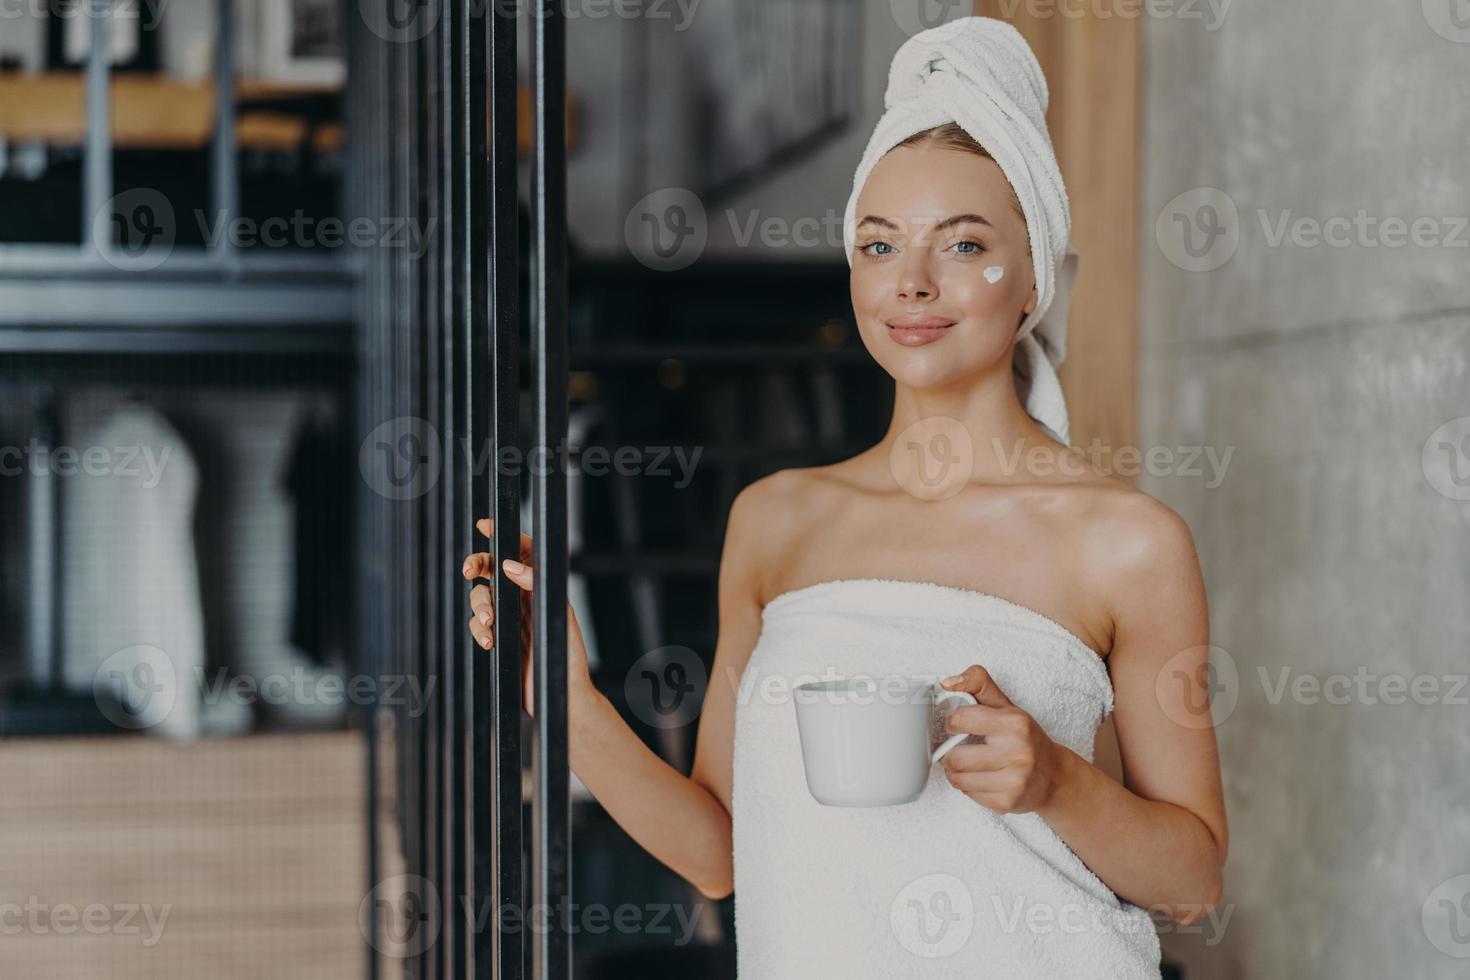 la foto di una giovane modella soddisfatta indossa la crema sul viso, è soddisfatta dopo aver fatto il bagno, avvolta in un asciugamano morbido bianco, beve caffè o tè, posa sopra l'interno della casa. trattamento antietà